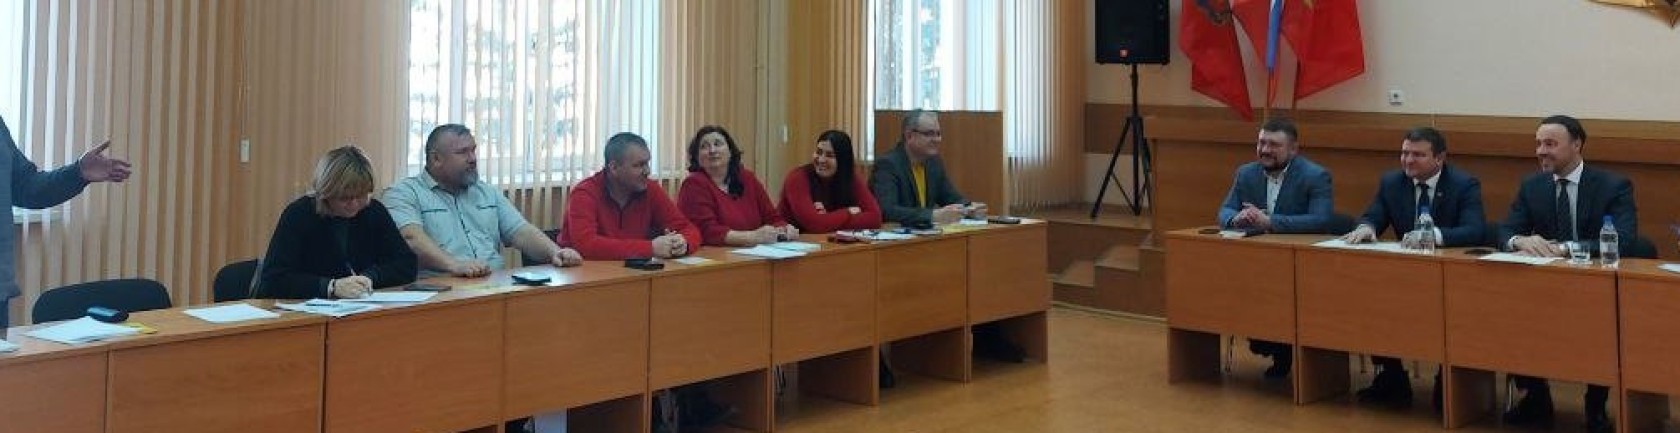 Общественники Железногорска рассмотрели важные для ЗАТО вопросы